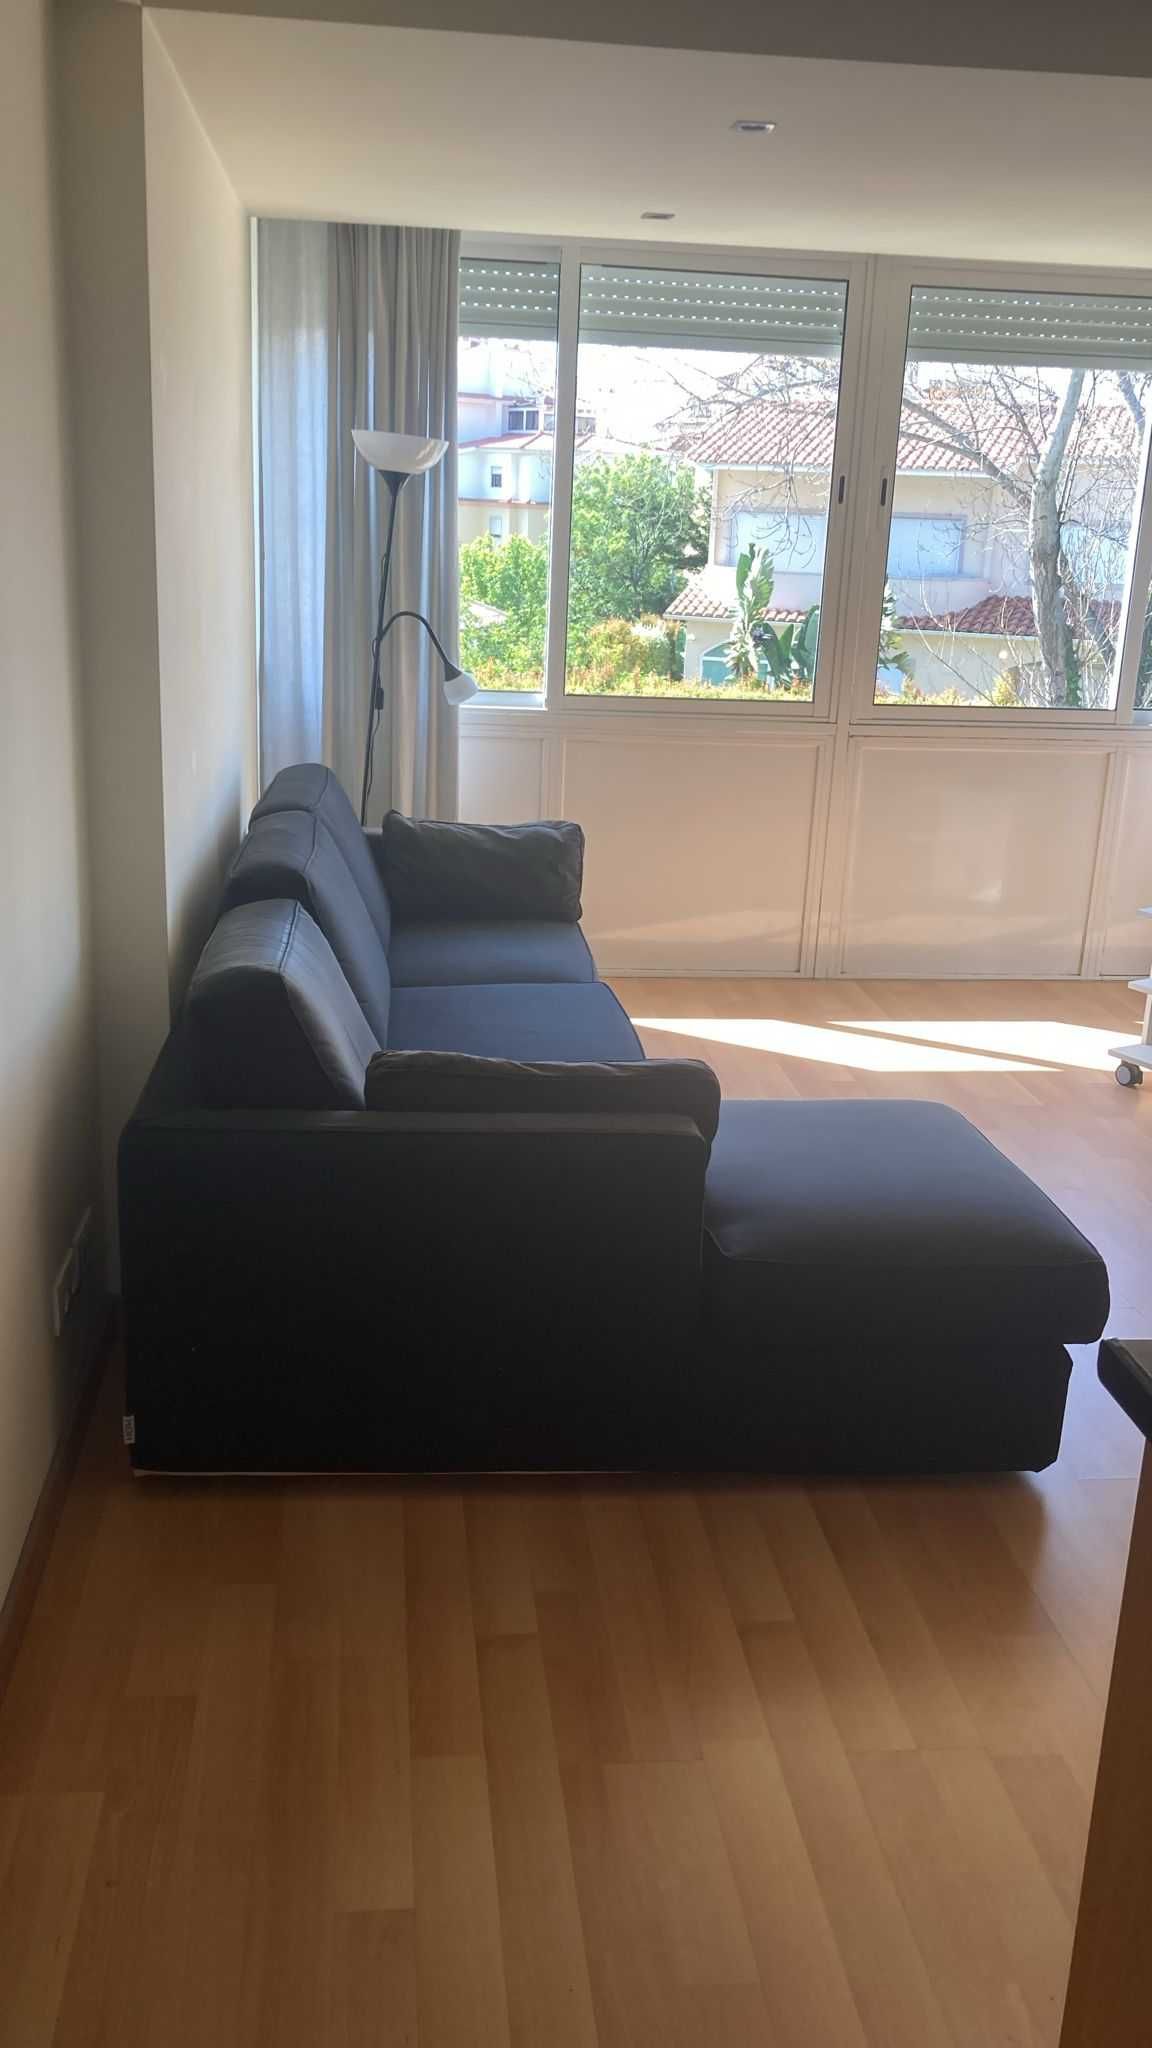 Sofá chaise-longue com 10 anos, mas muito confortável